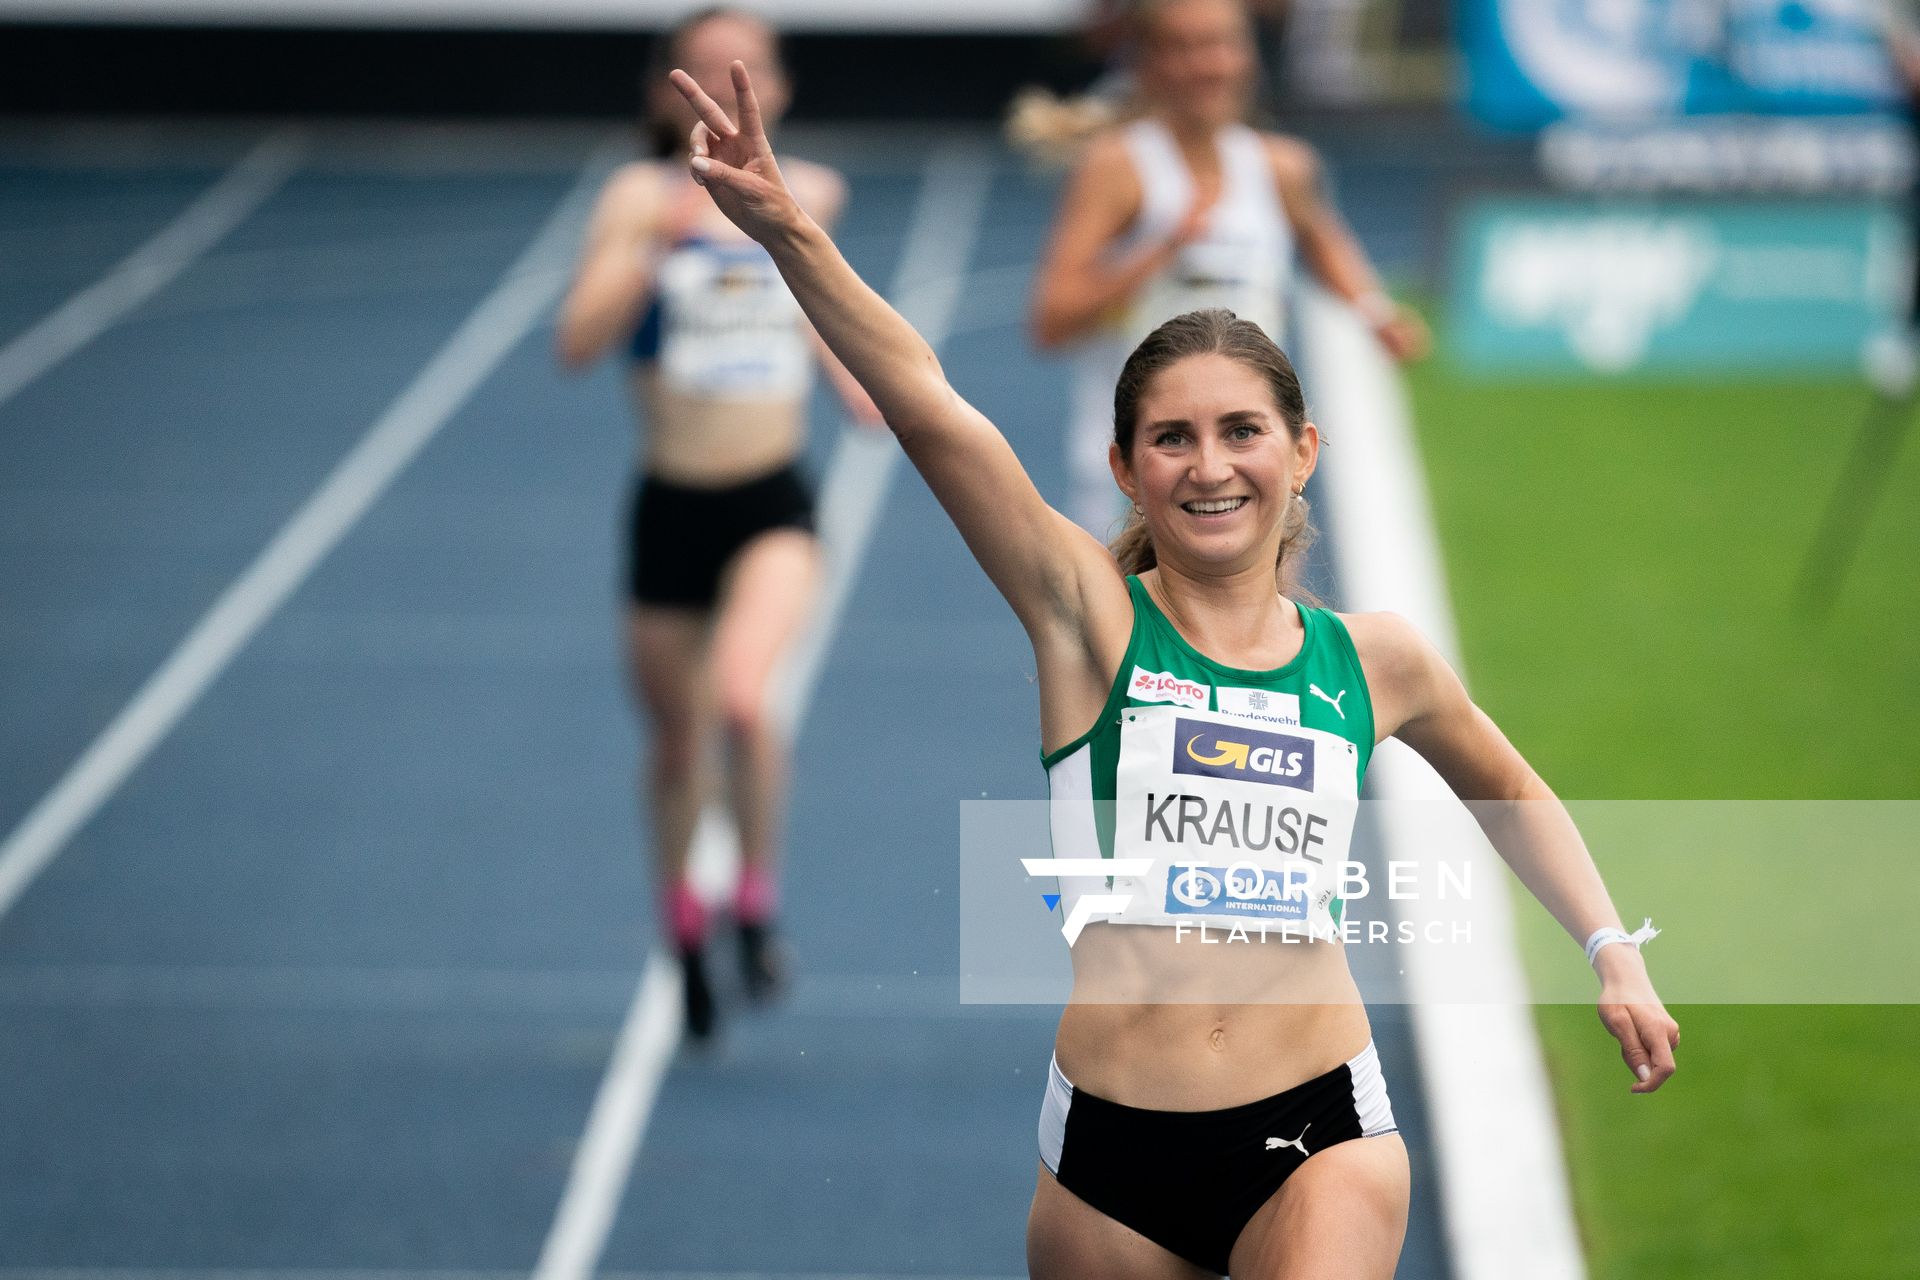 Gesa Felicitas Krause (Silvesterlauf Trier) gewinnt die 5000m am 06.06.2021 waehrend den deutschen Leichtathletik-Meisterschaften 2021 im Eintracht-Stadion in Braunschweig